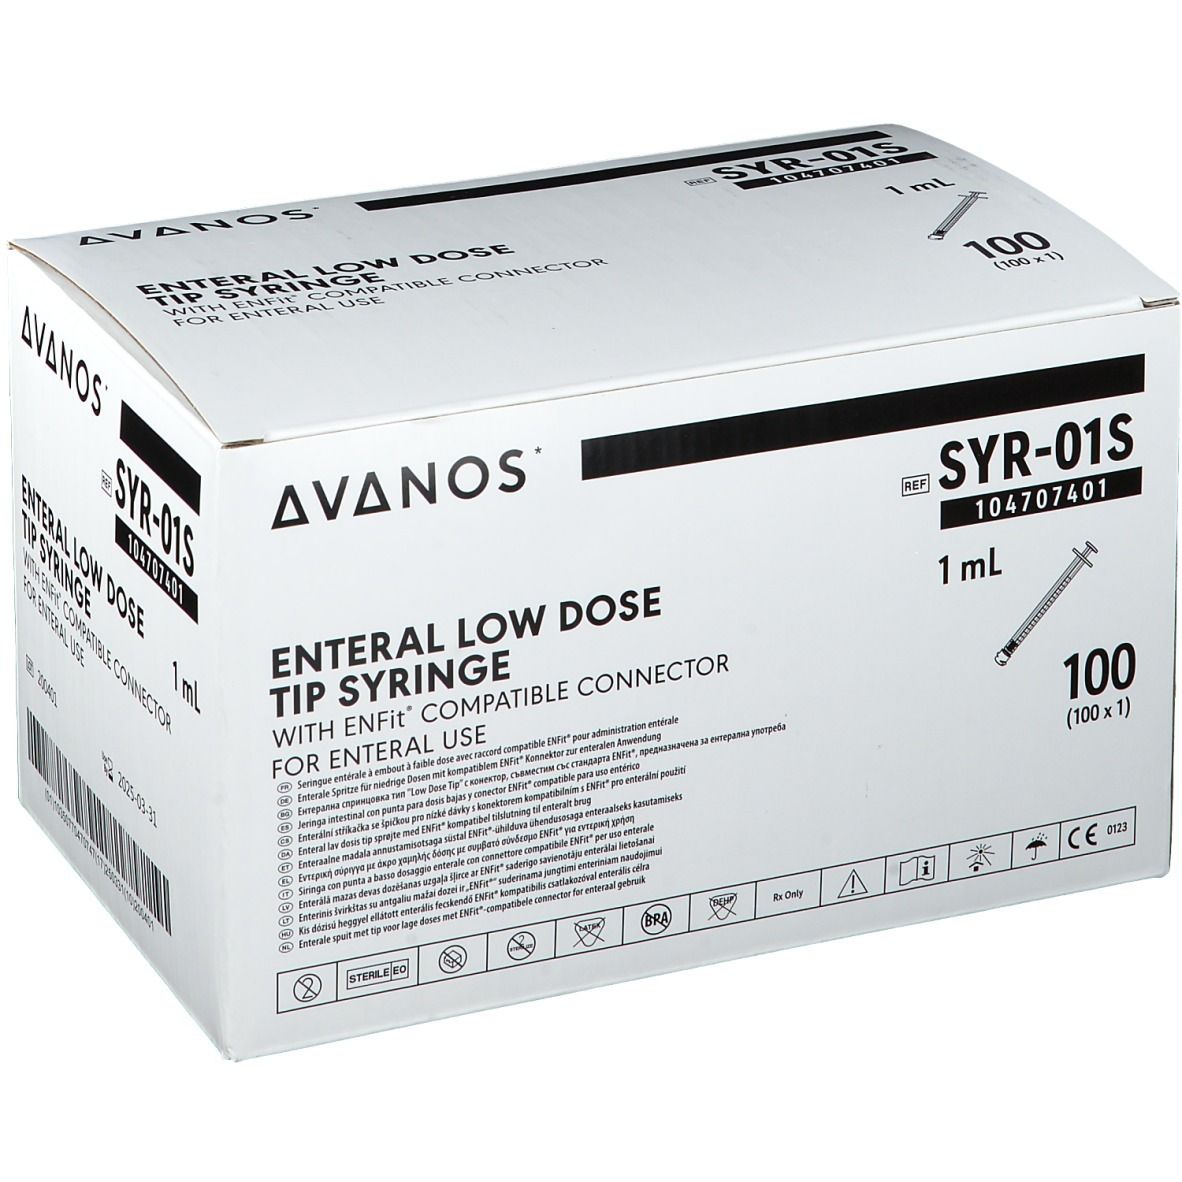 AVANOS ENTERAL Spritze 1 ml mit Low-Dose-Tip